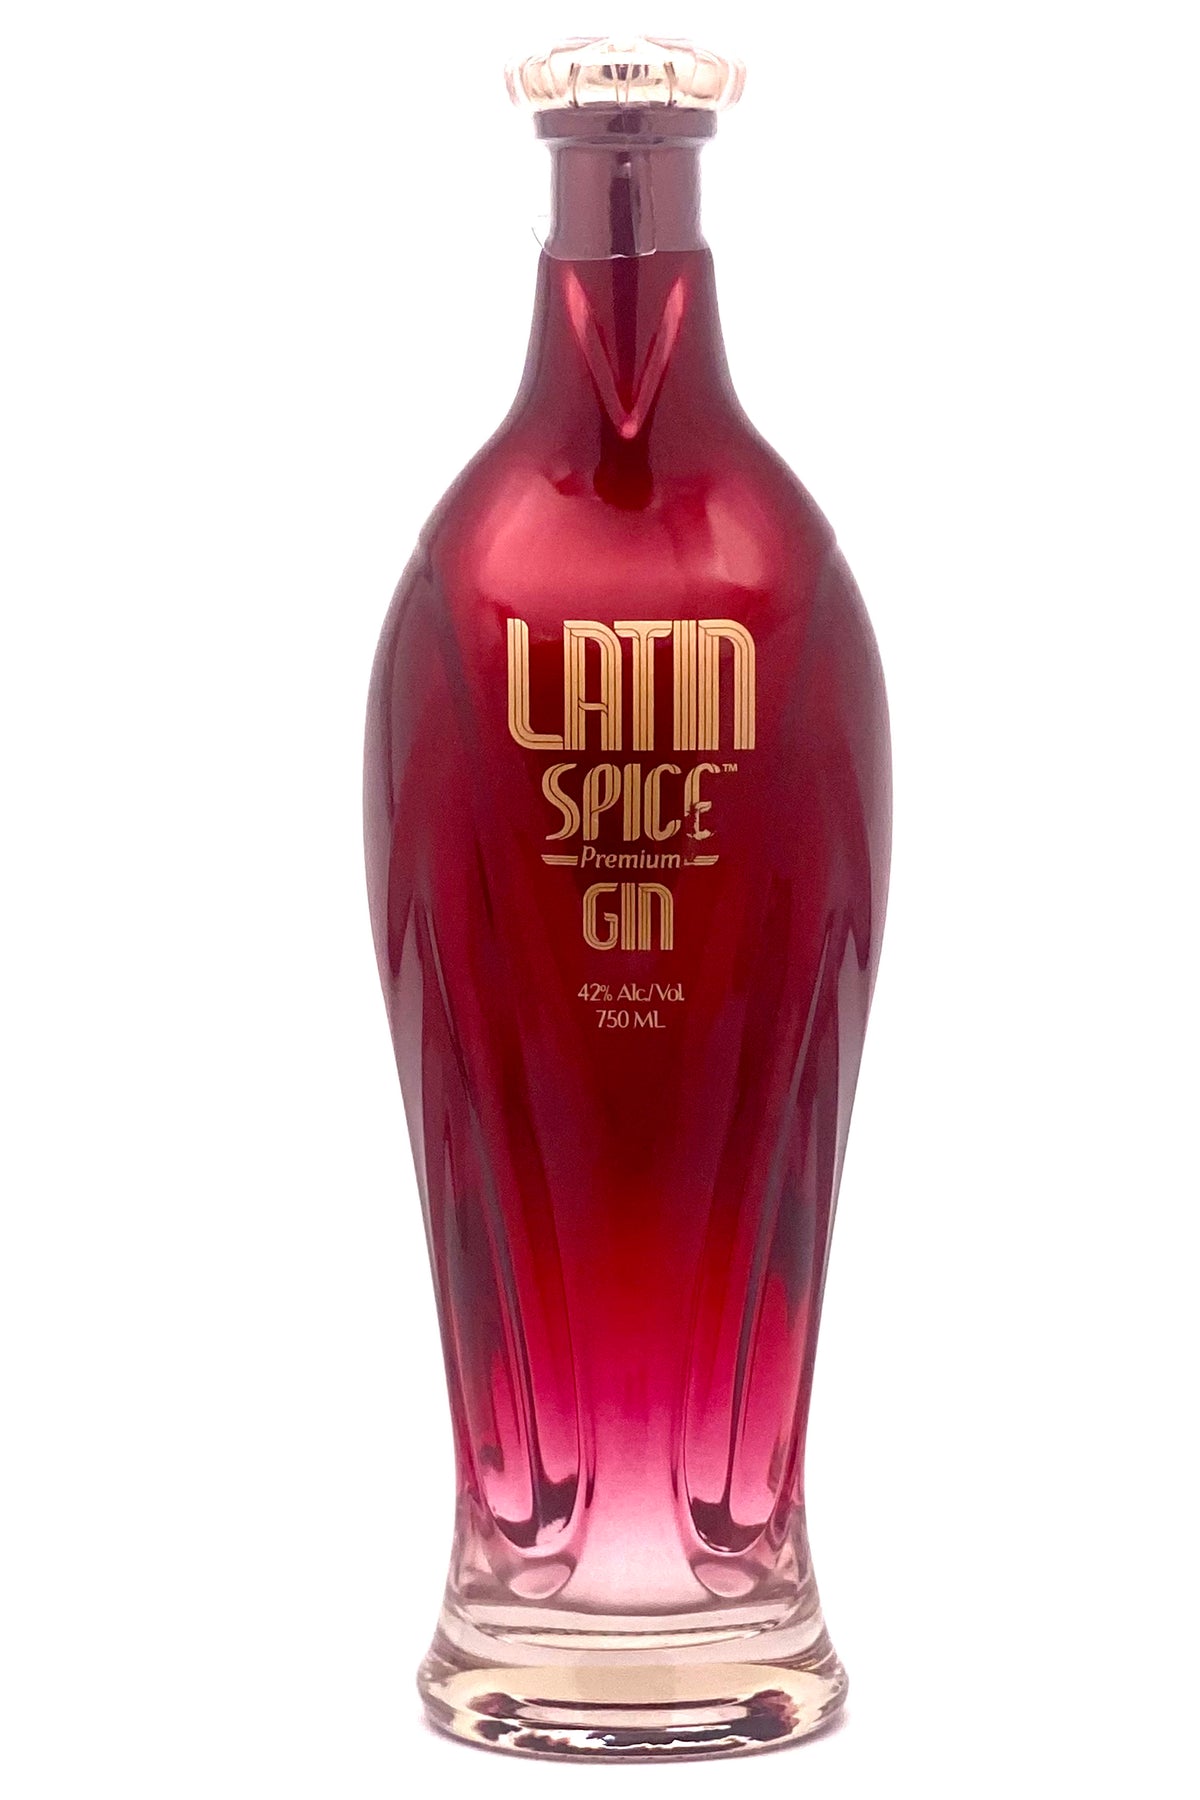 Latin Spice Gin